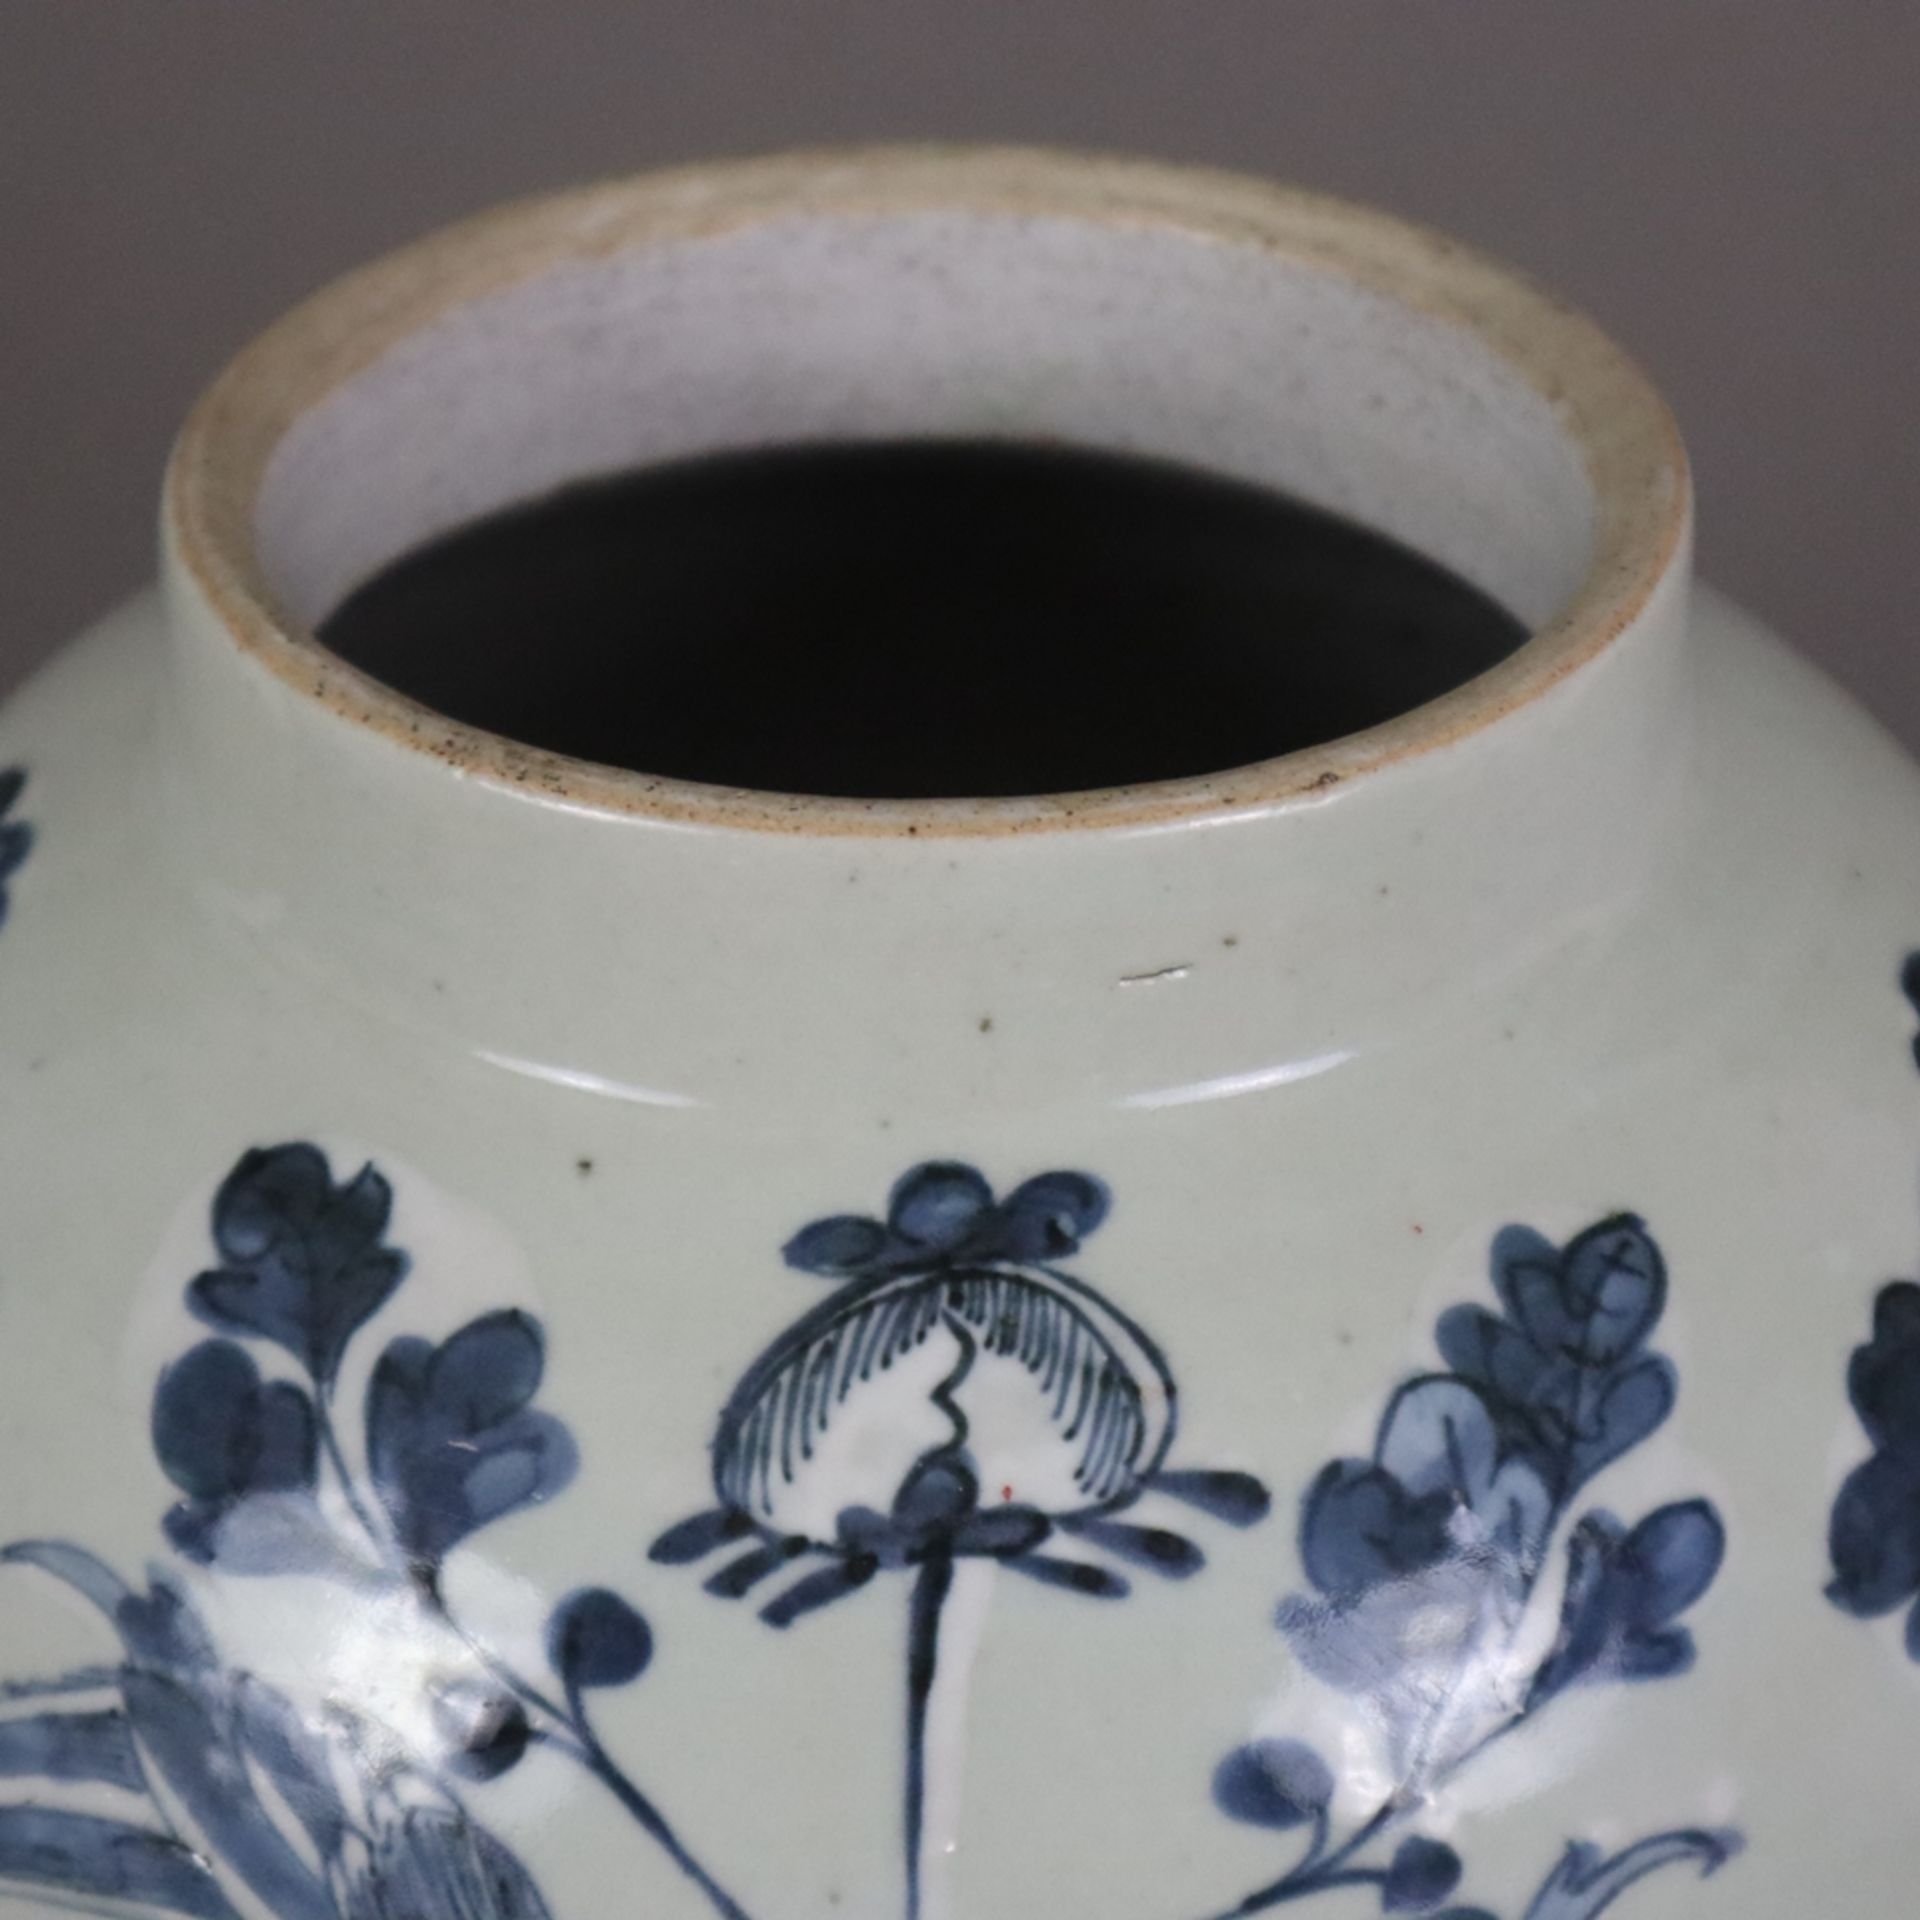 Schultervase mit Deckel - China um 1900, Porzellan, sehr helle Seladonglasur, schauseitig Floralmot - Bild 4 aus 11